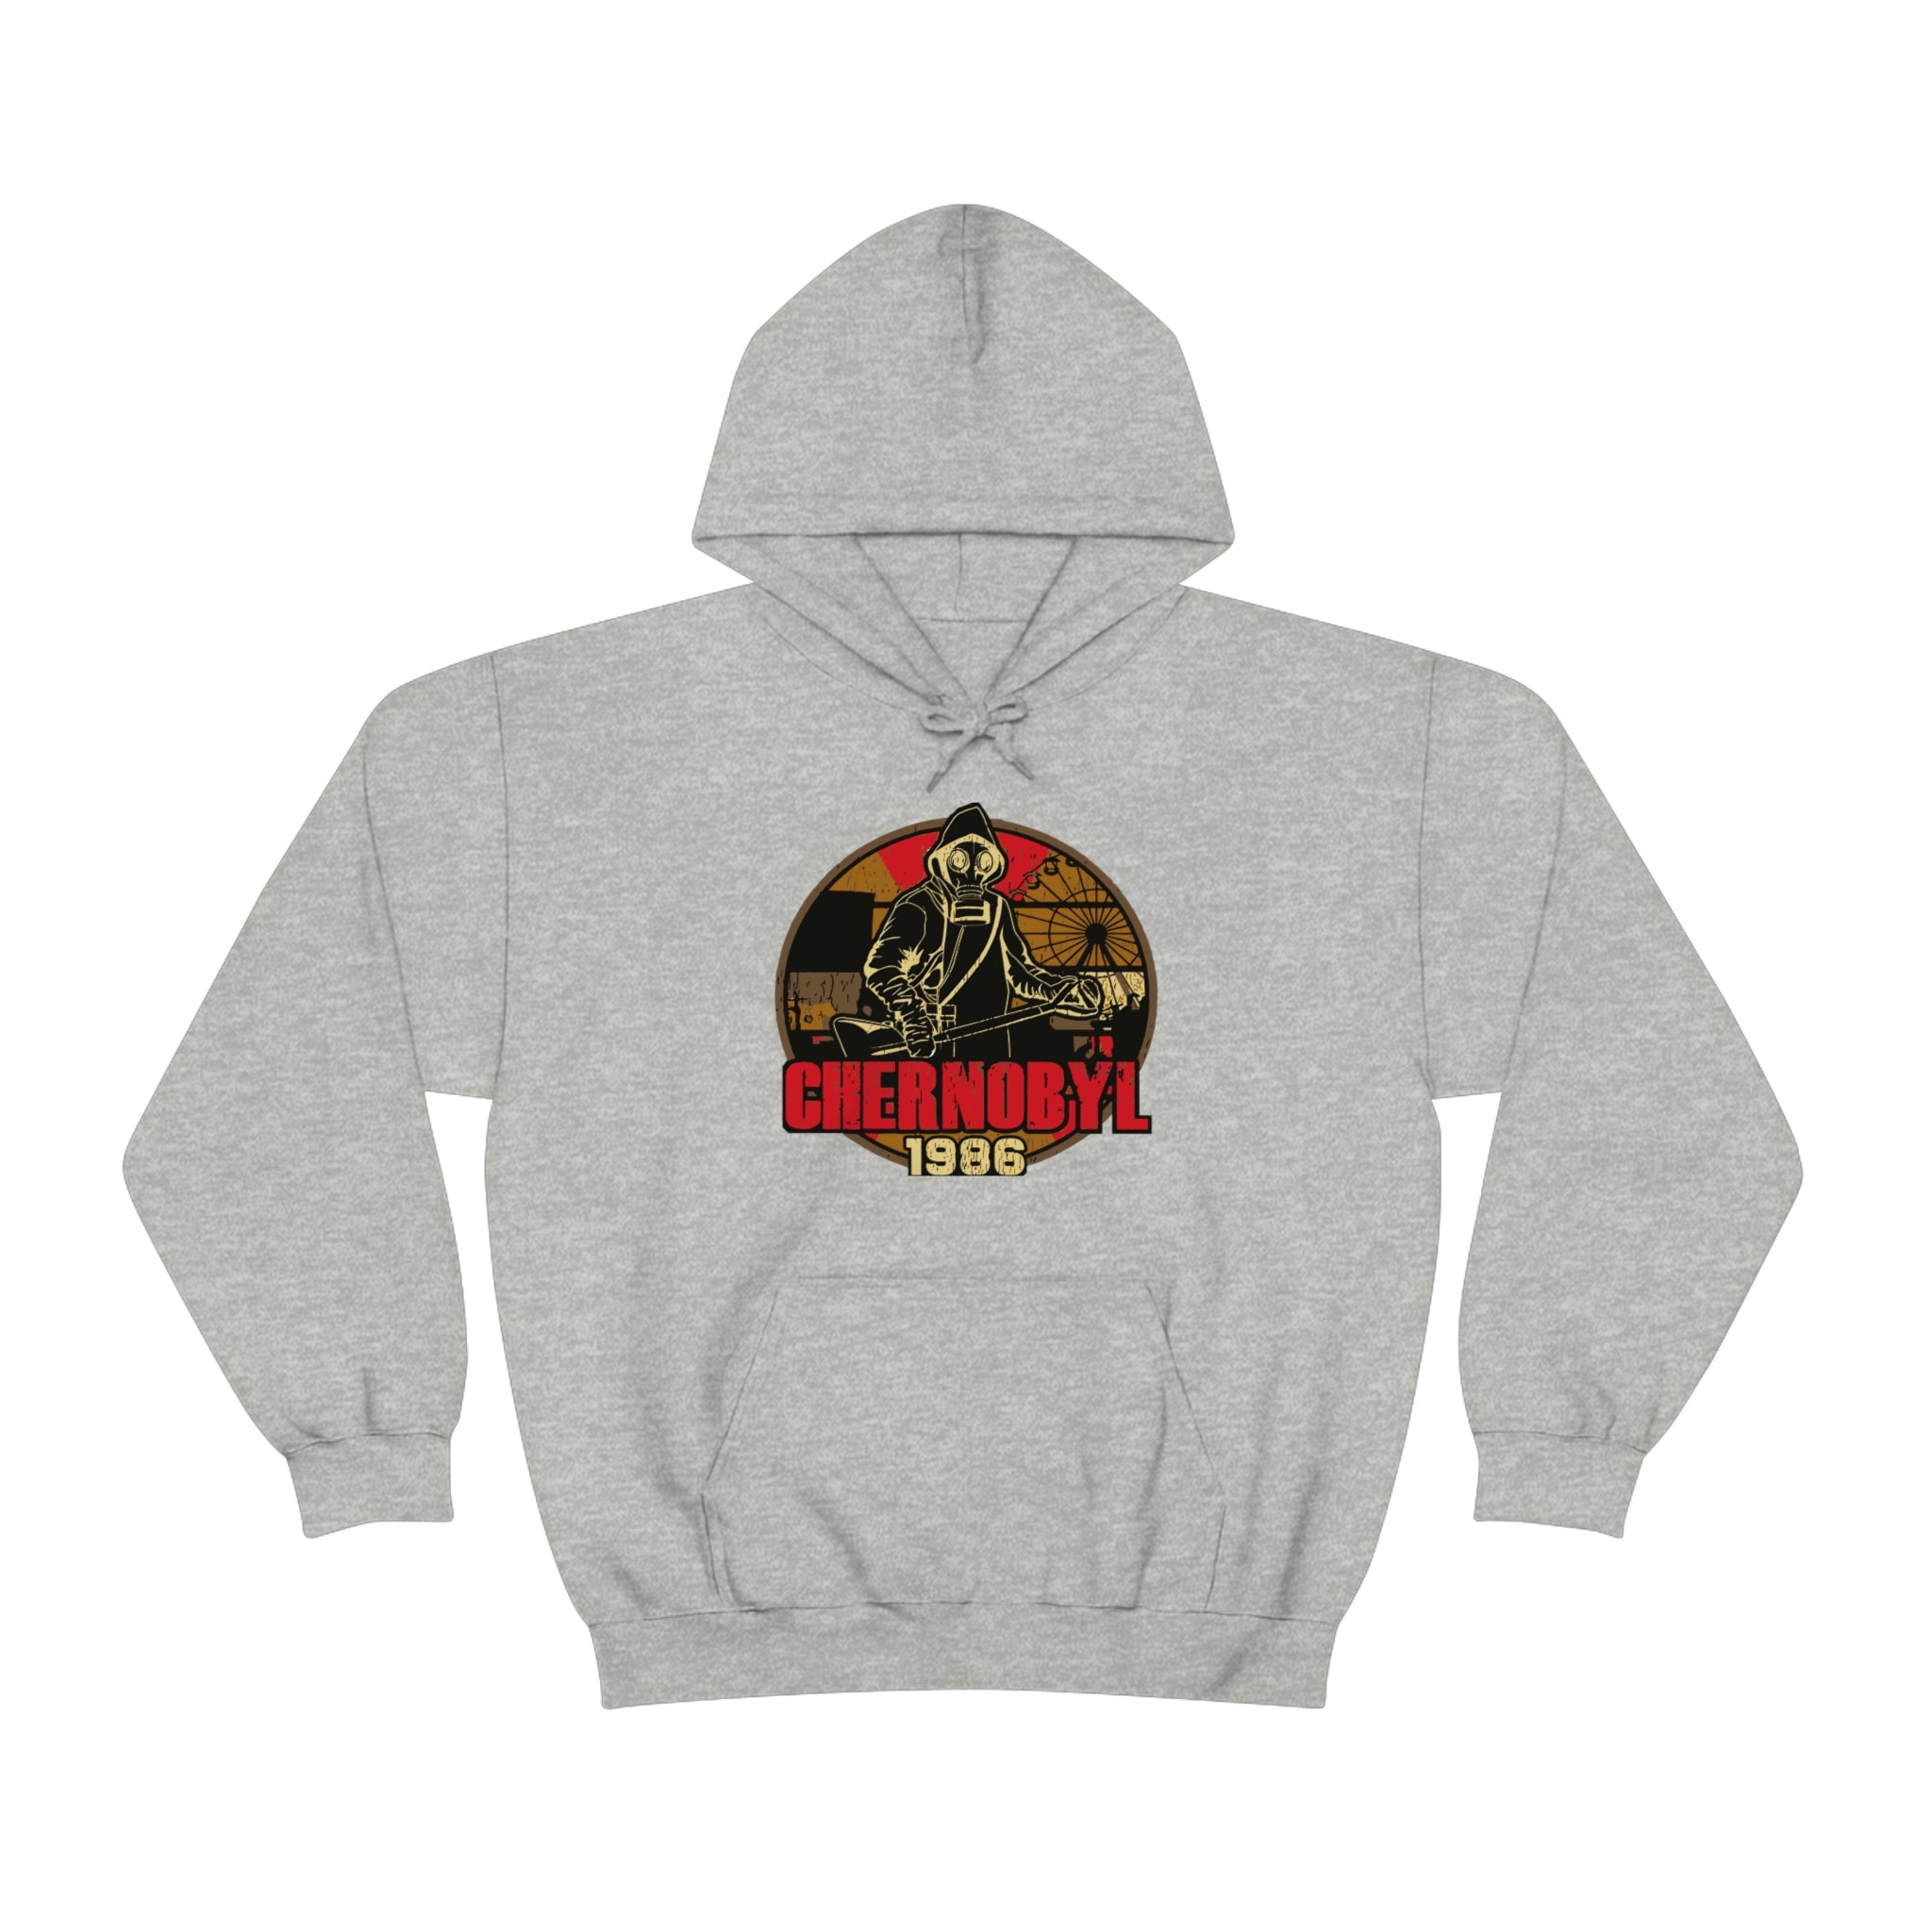 Chernobyl 1986 -  Hooded Sweatshirt